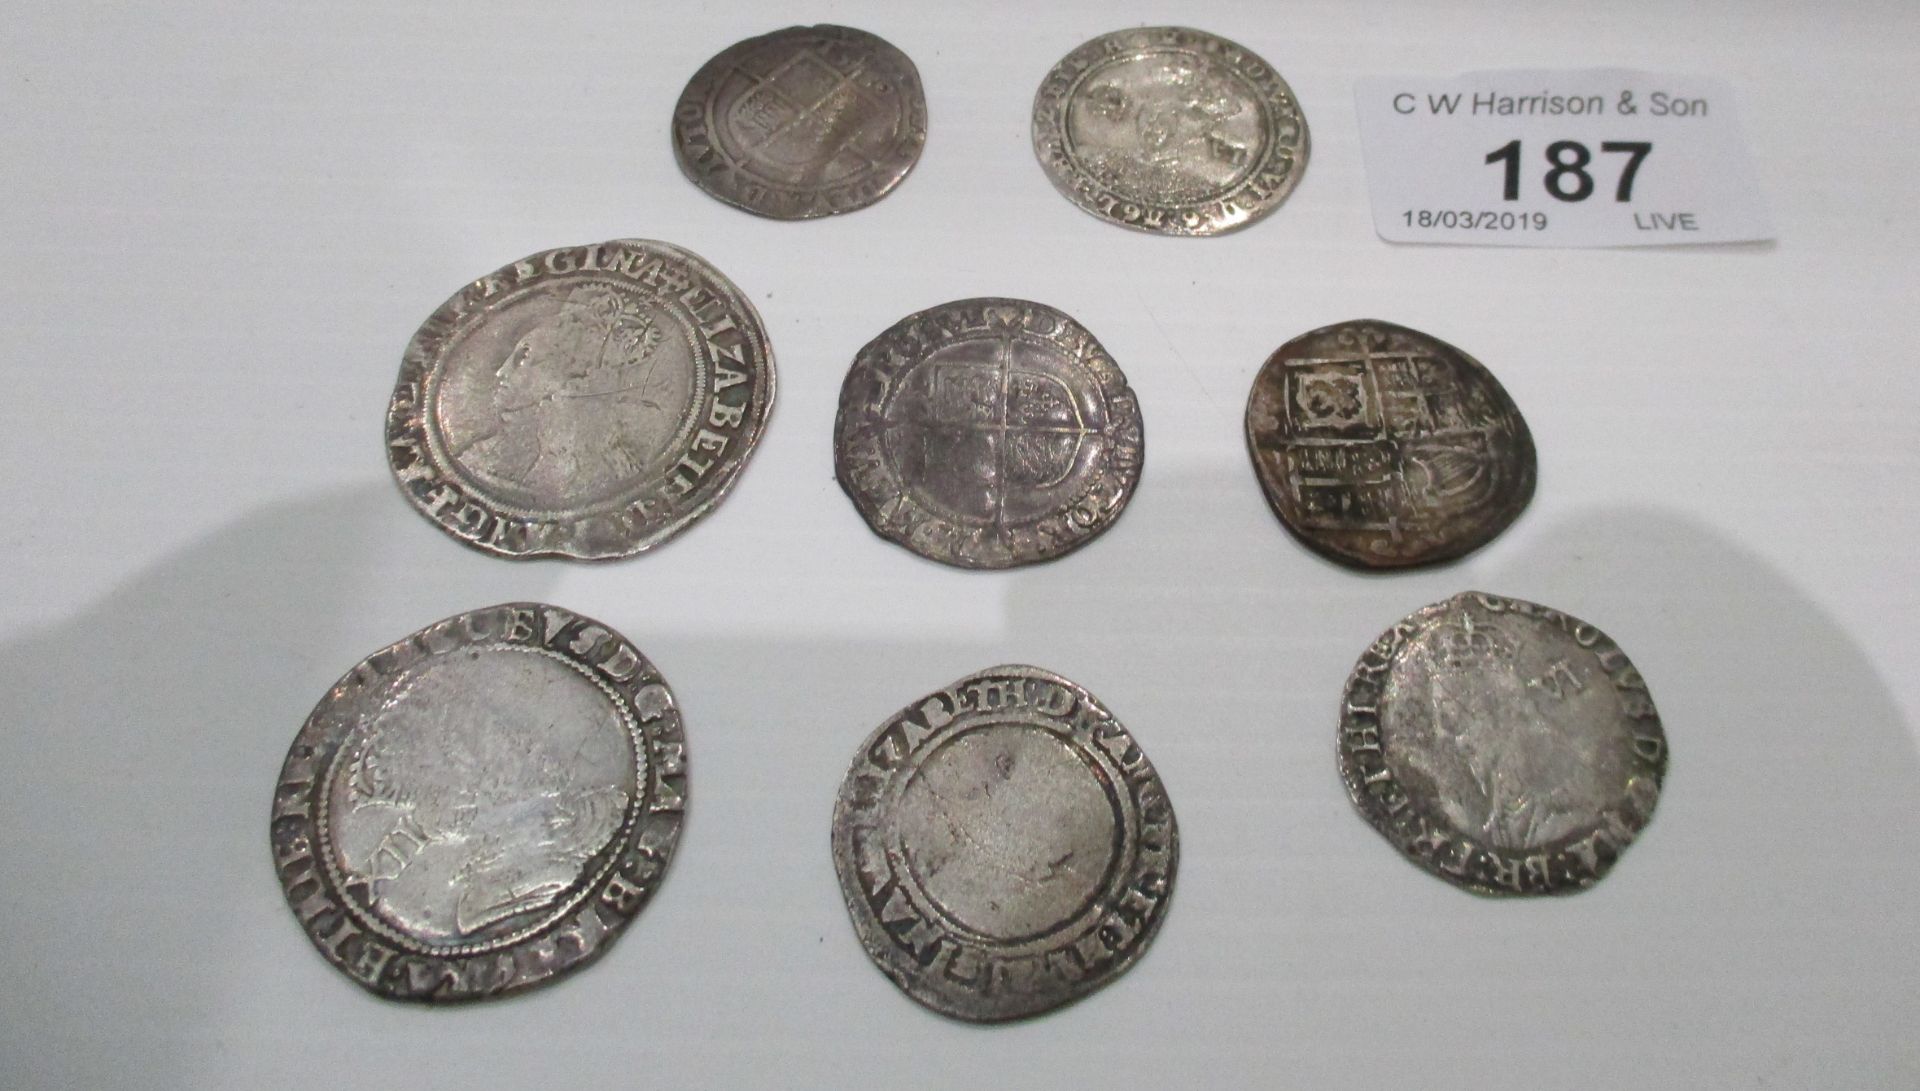 8 hammered coins - Elizabeth I, Edward VI,